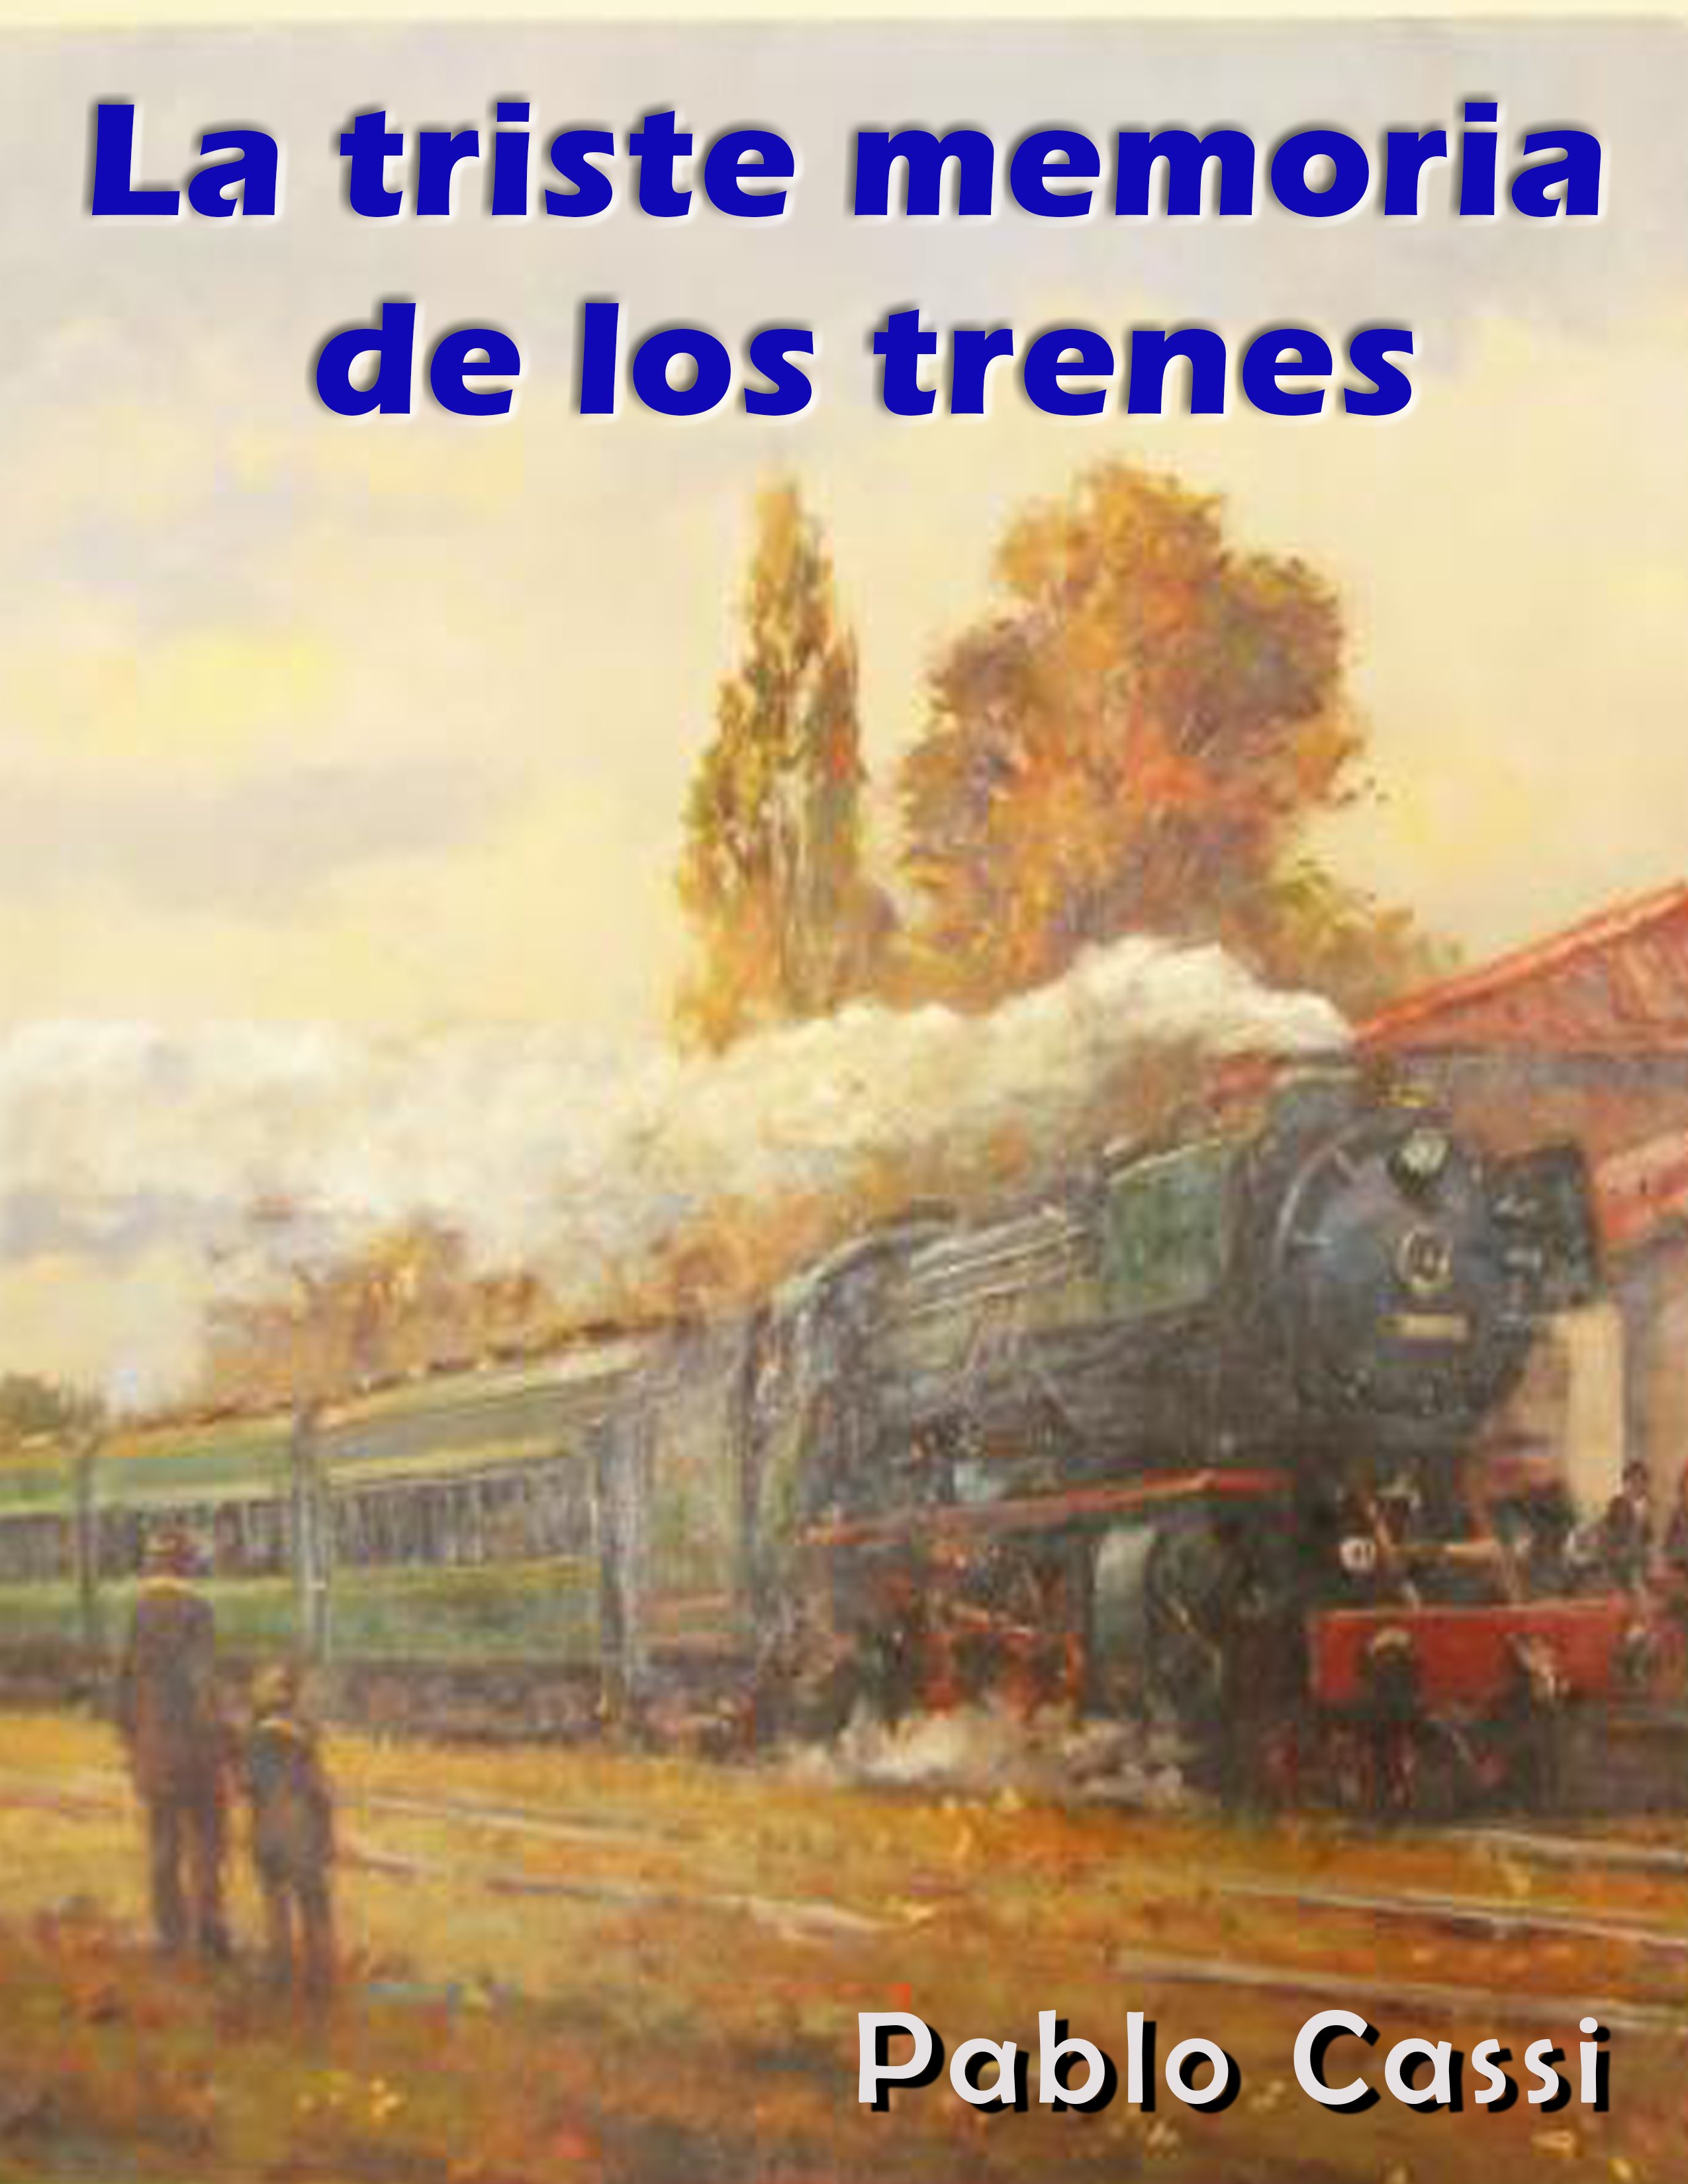 La triste memoria de los trenes, nuevo libro del poeta Pablo Cassi